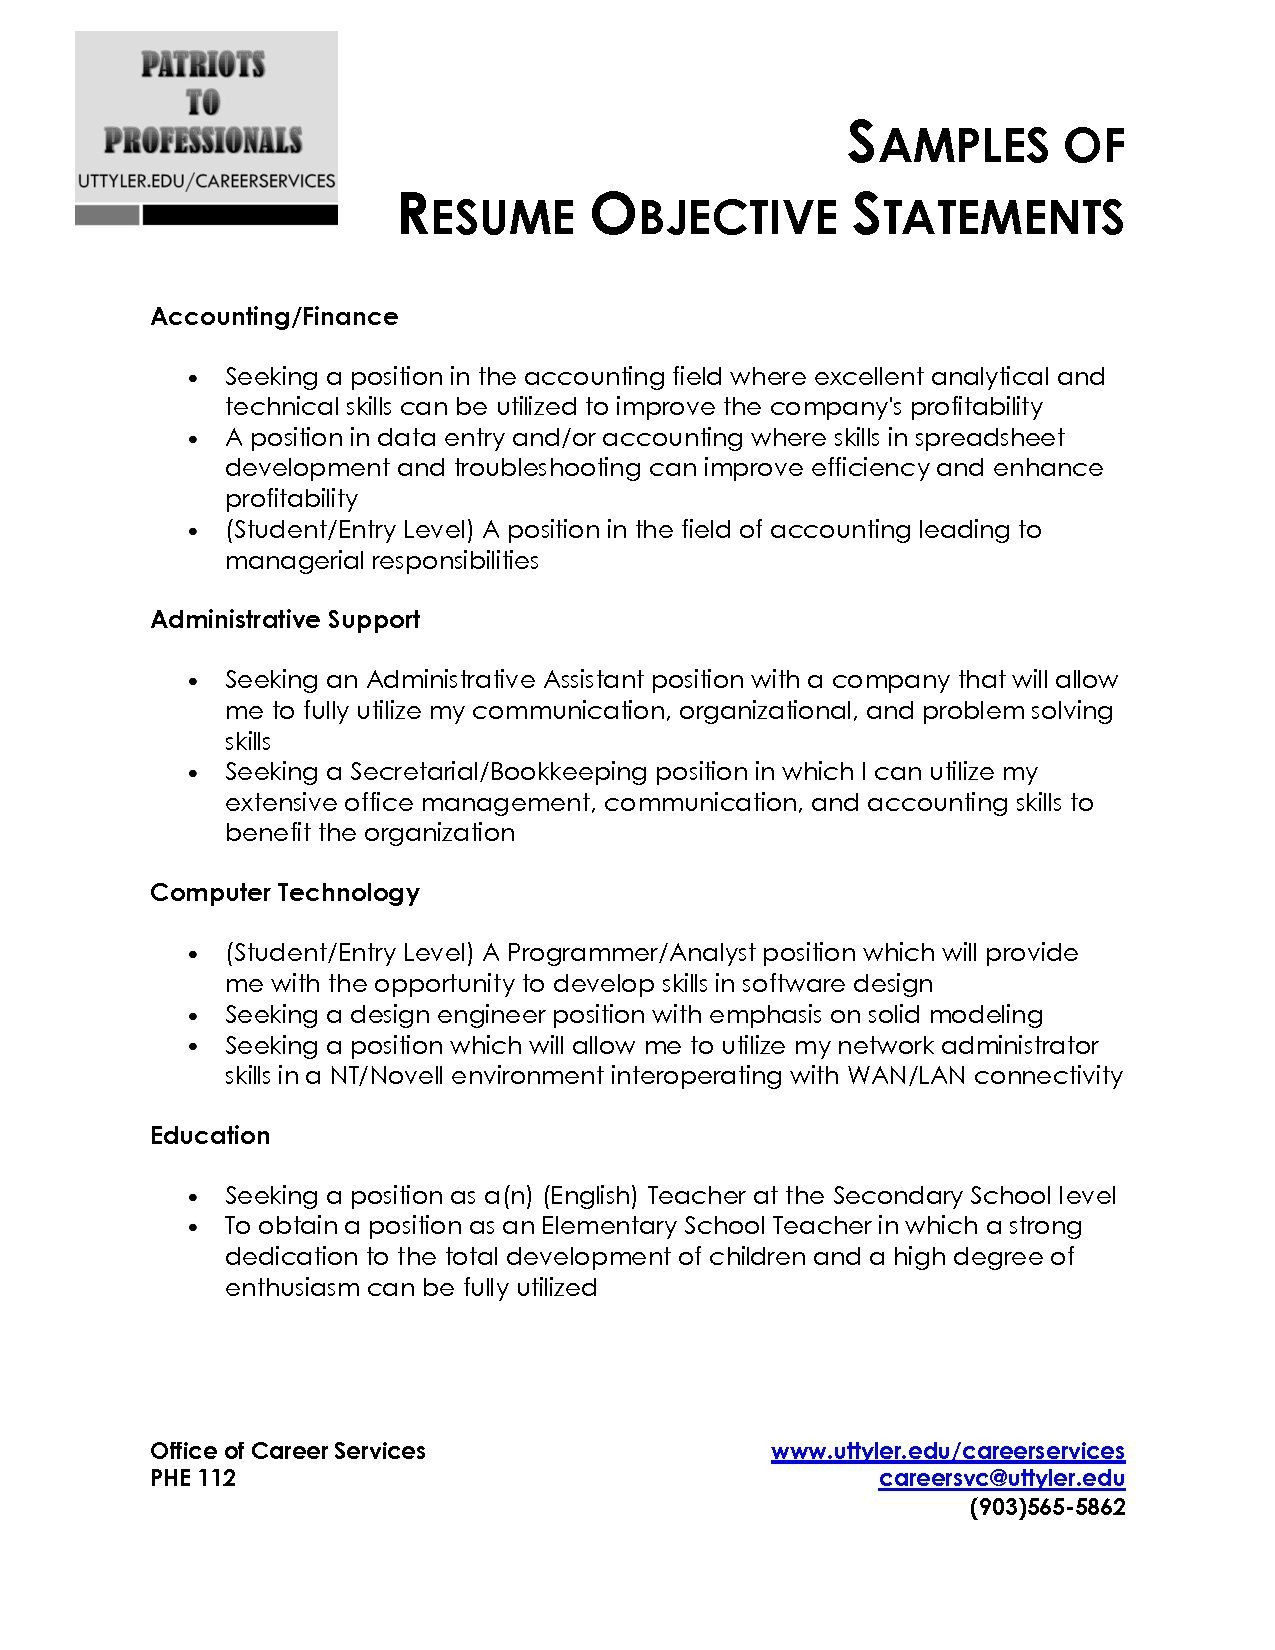 Resume Career Objective Samples for Freshers Pin On Random